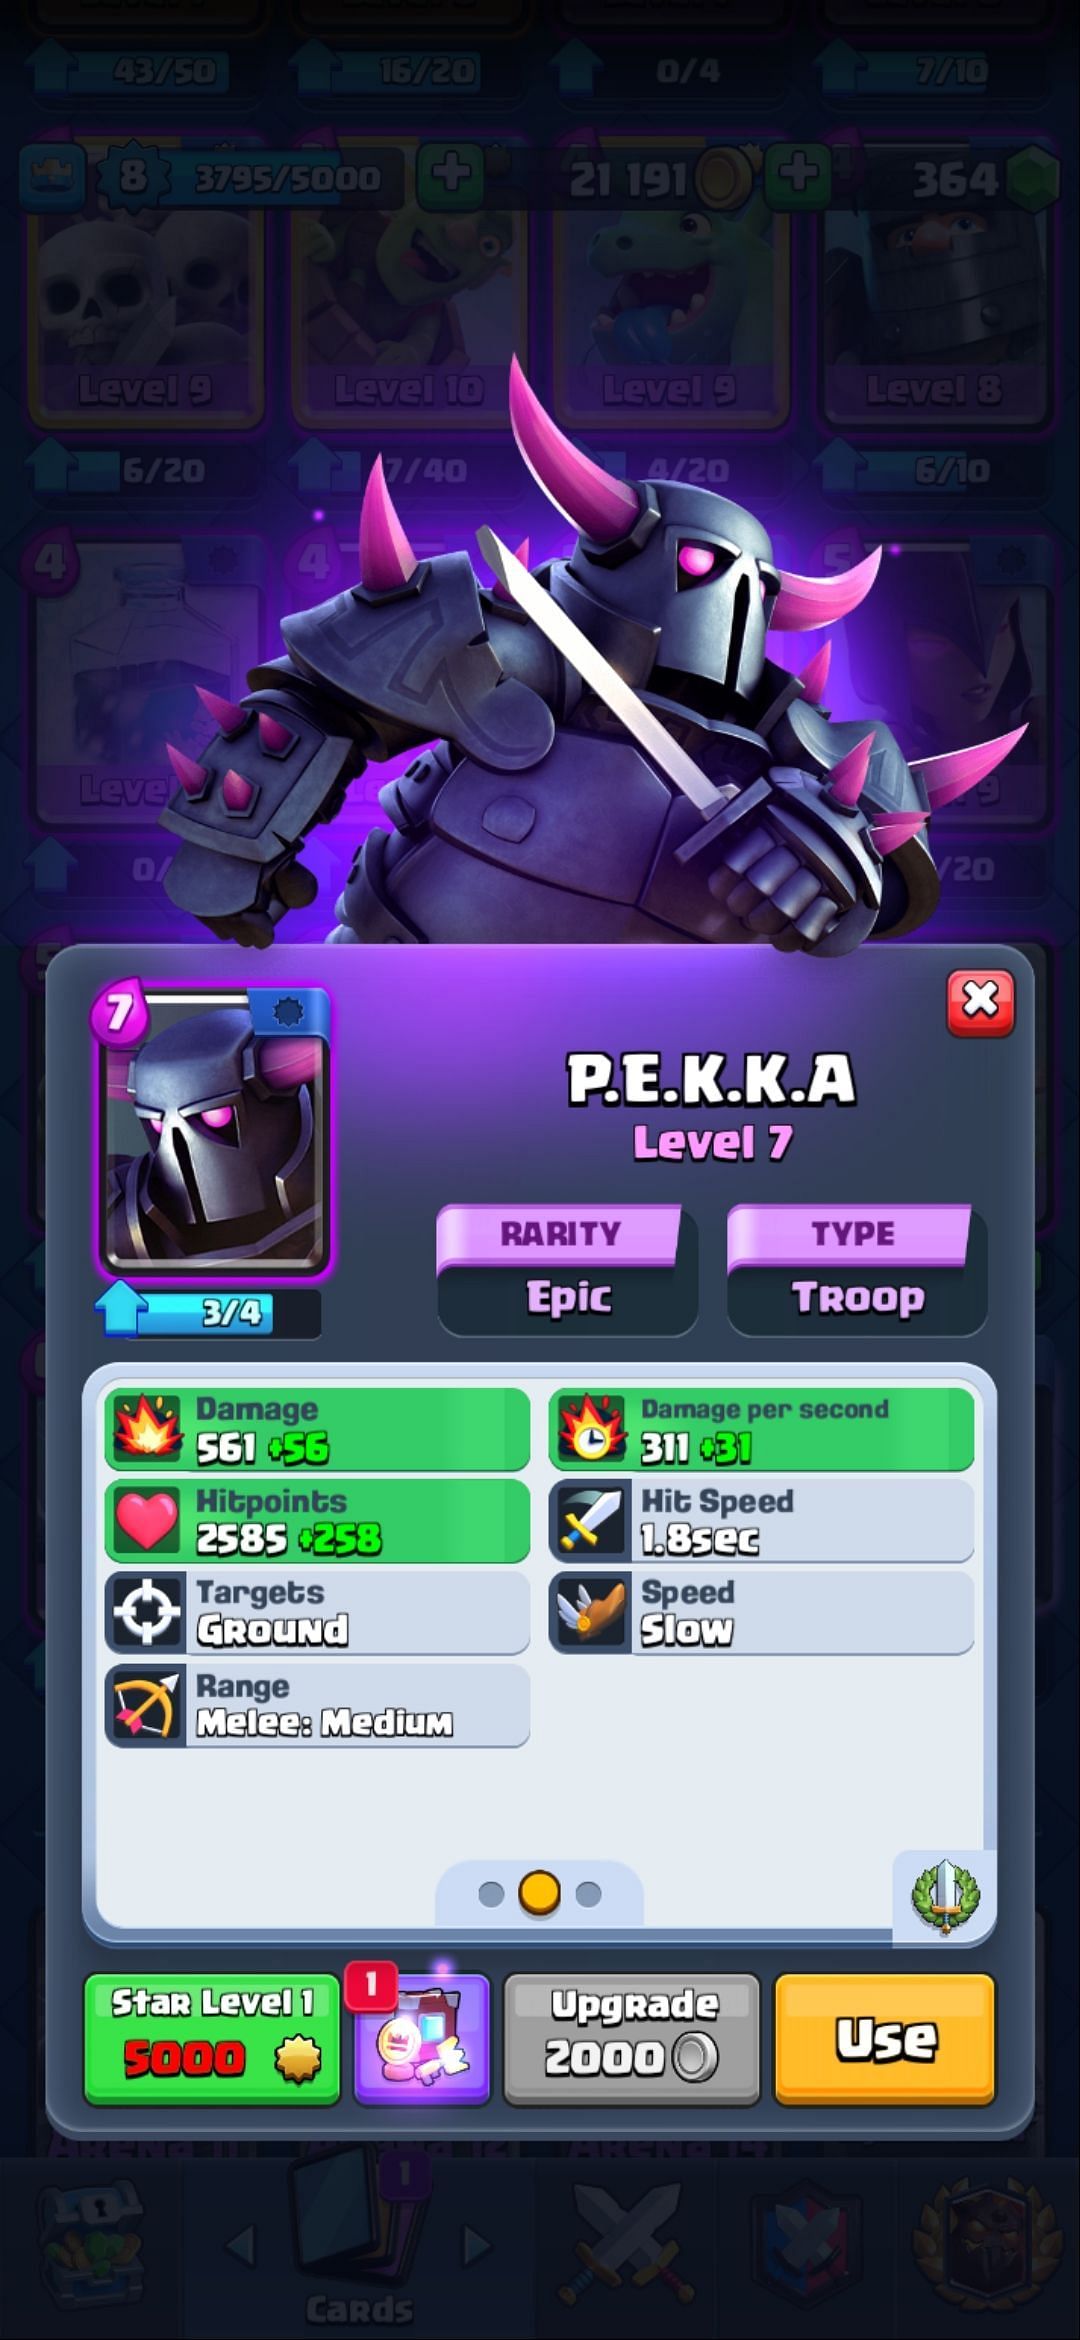 The Pekka card in Clash Royale (Image via Sportskeeda)